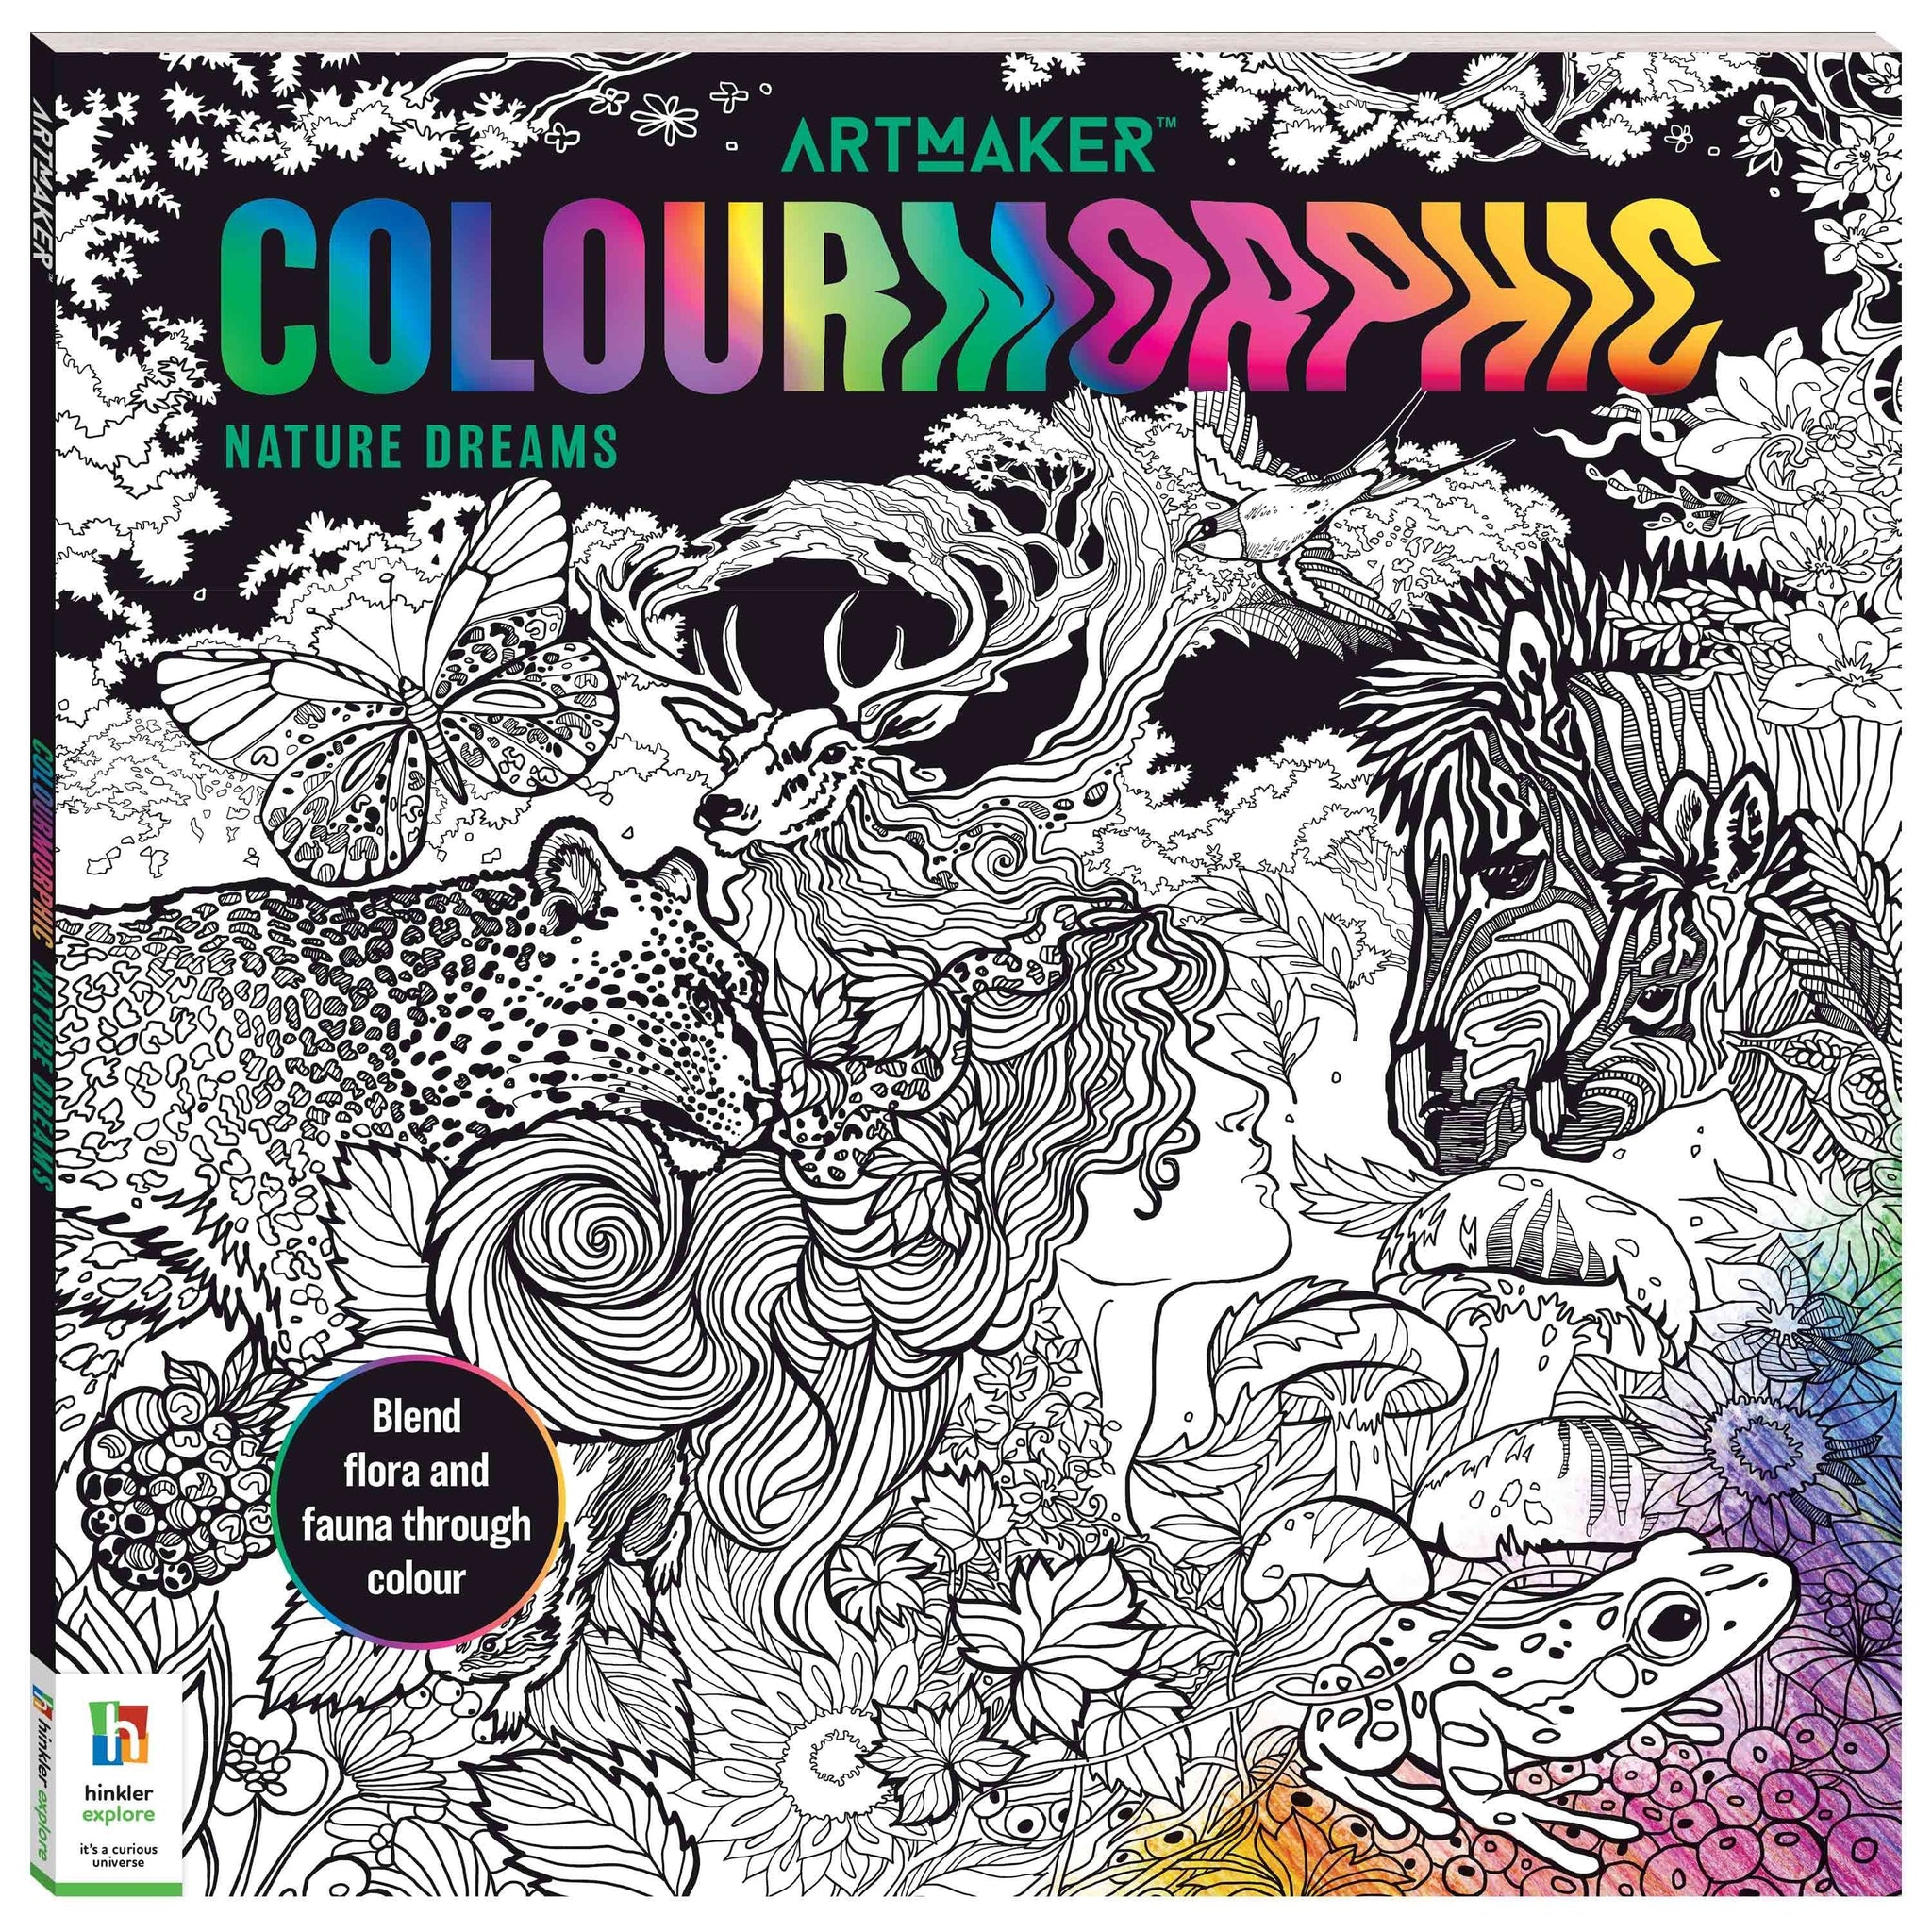 Art Maker Colourmorphic Colouring Book Nature Dreams